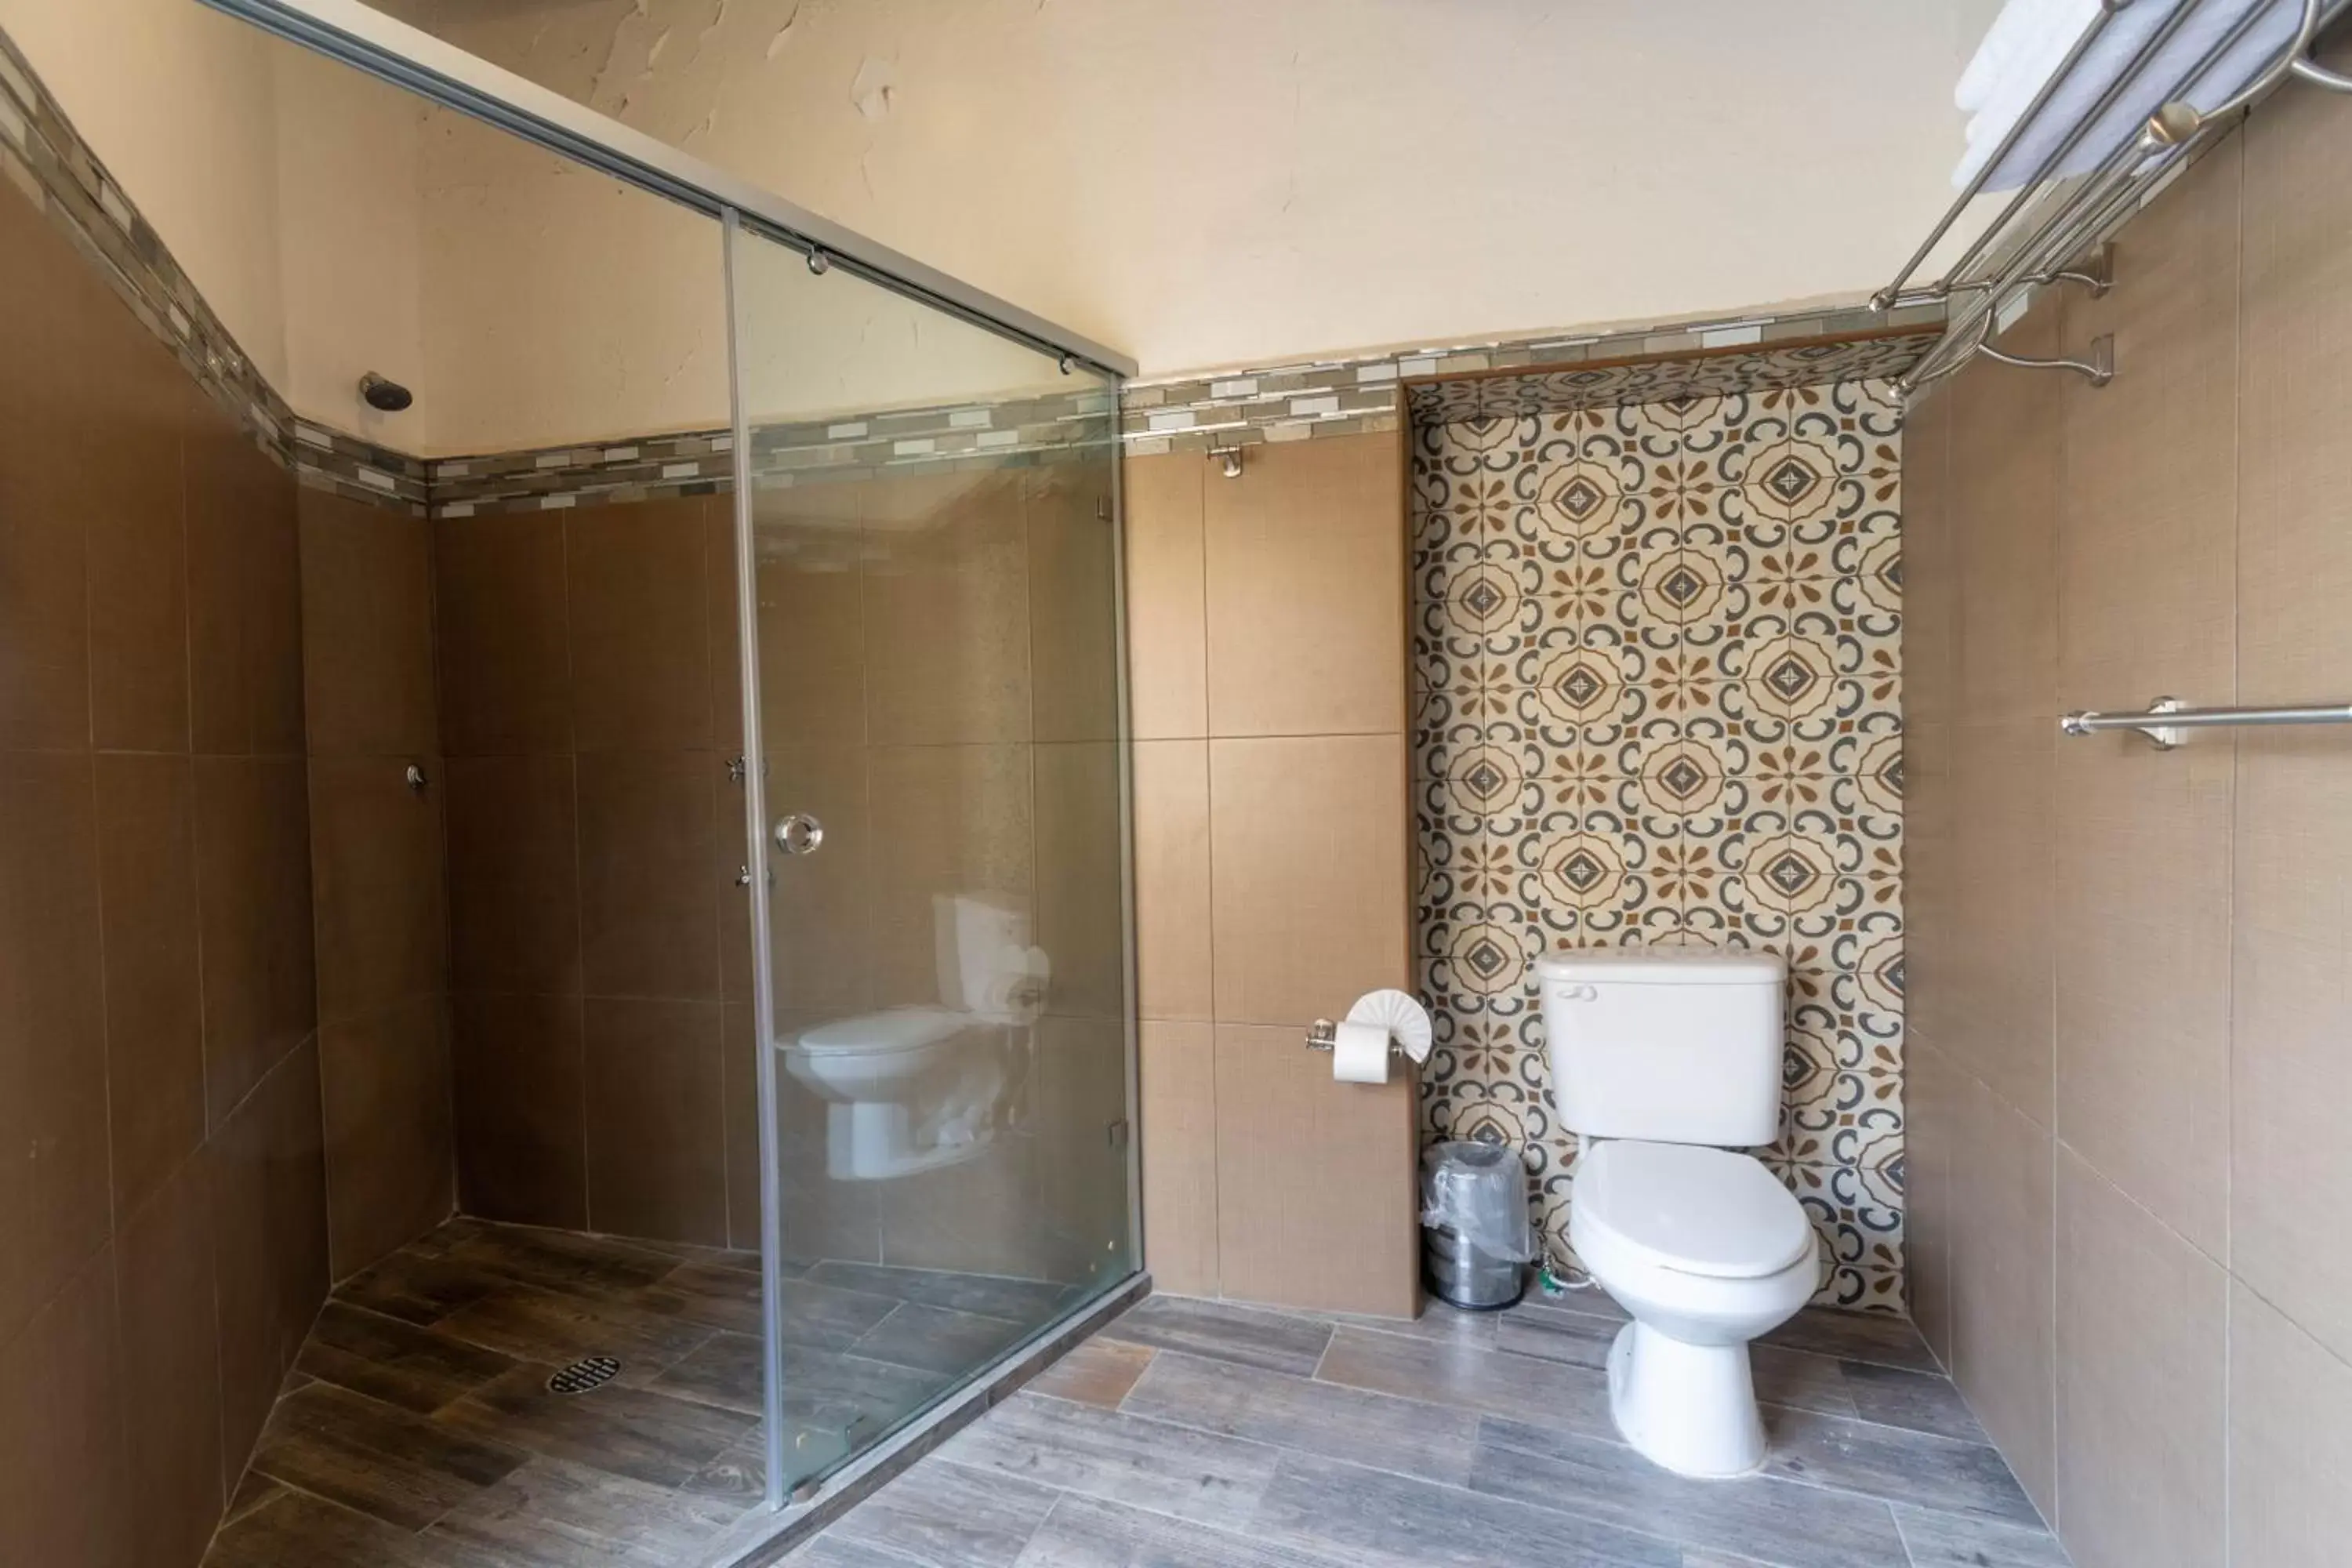 Decorative detail, Bathroom in Hotel Casa Sangre de Cristo